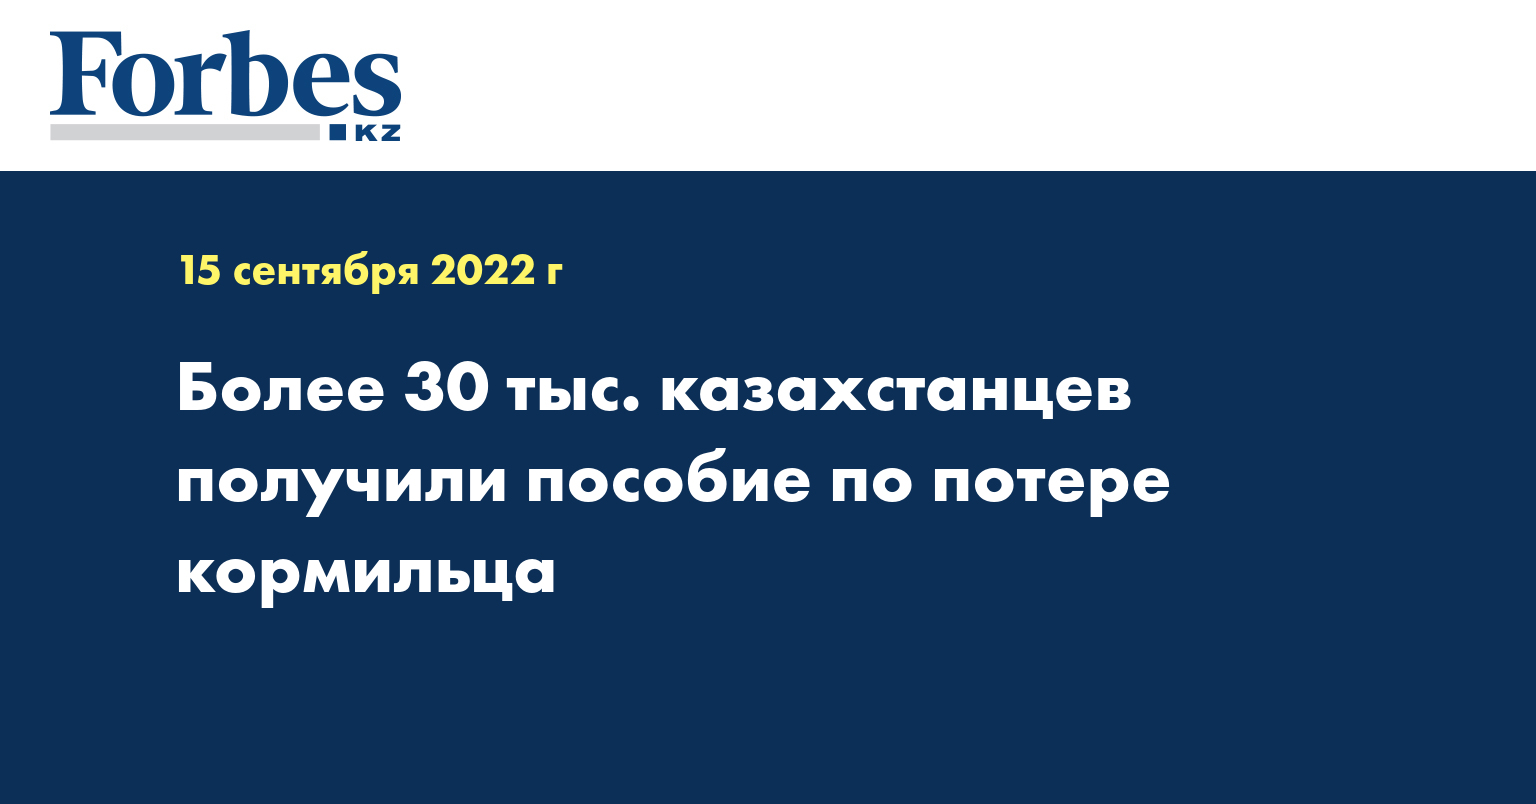 Более 30 тыс. казахстанцев получили пособие по потере кормильца